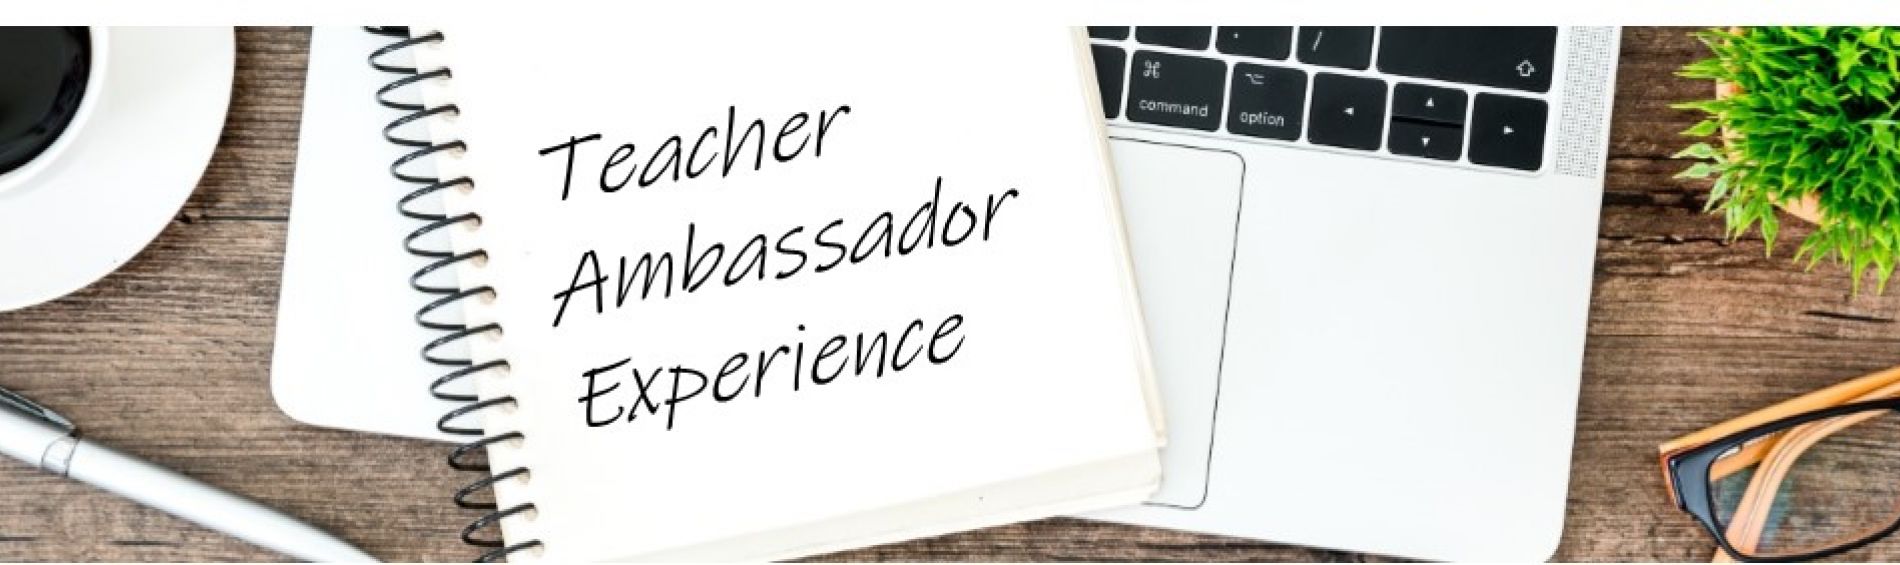 Teacher Ambassador Experience